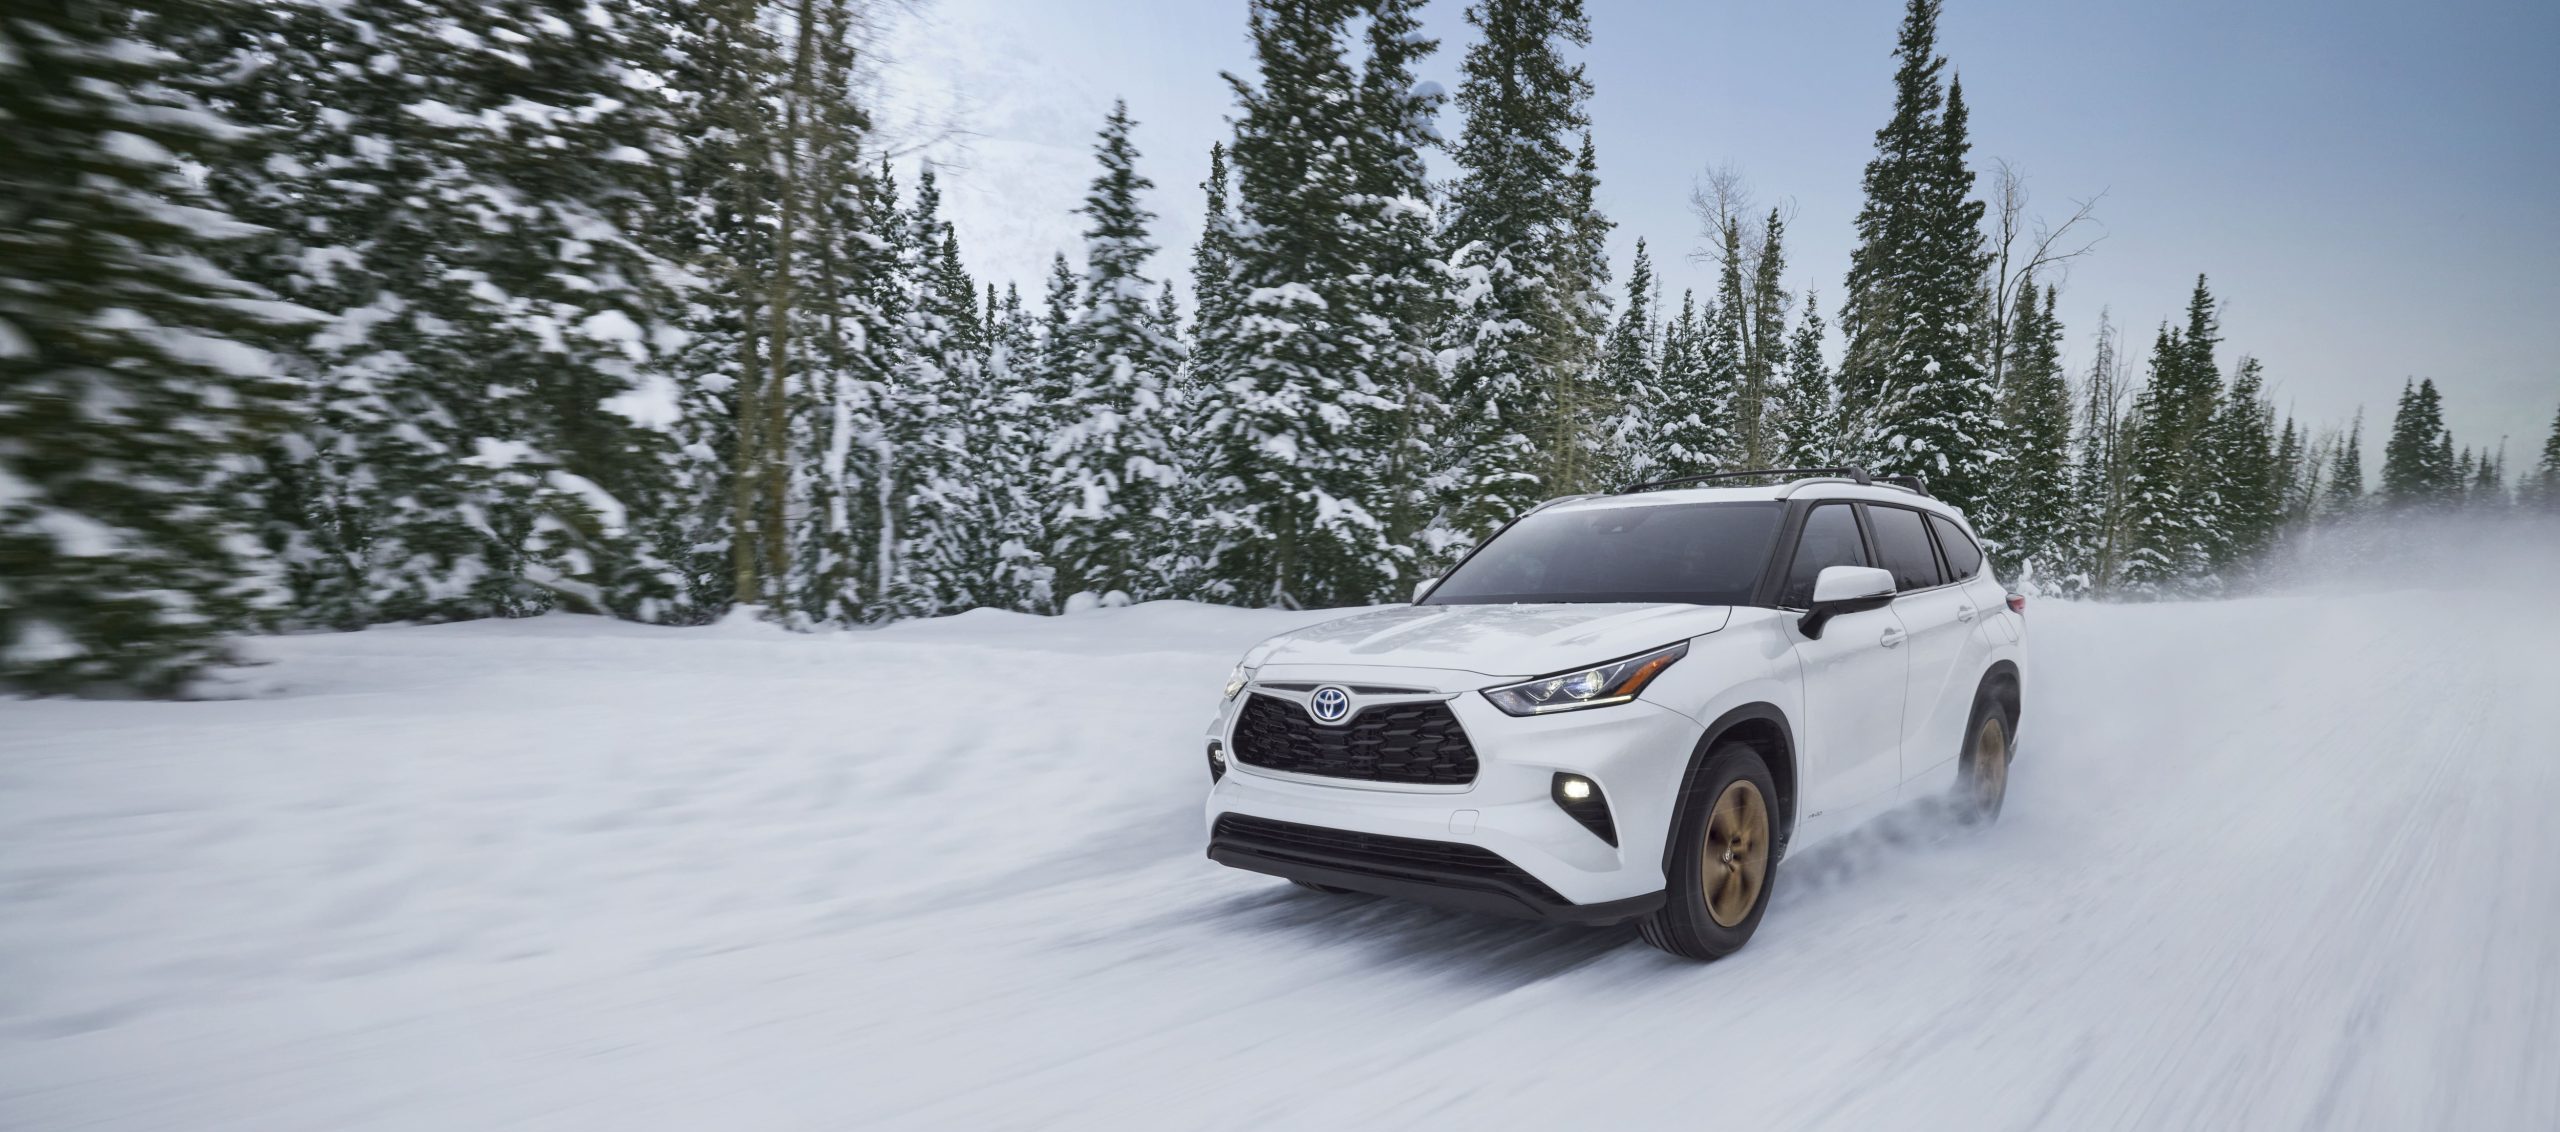 Toyota Highlander dalam mode SNOW untuk bermain ski